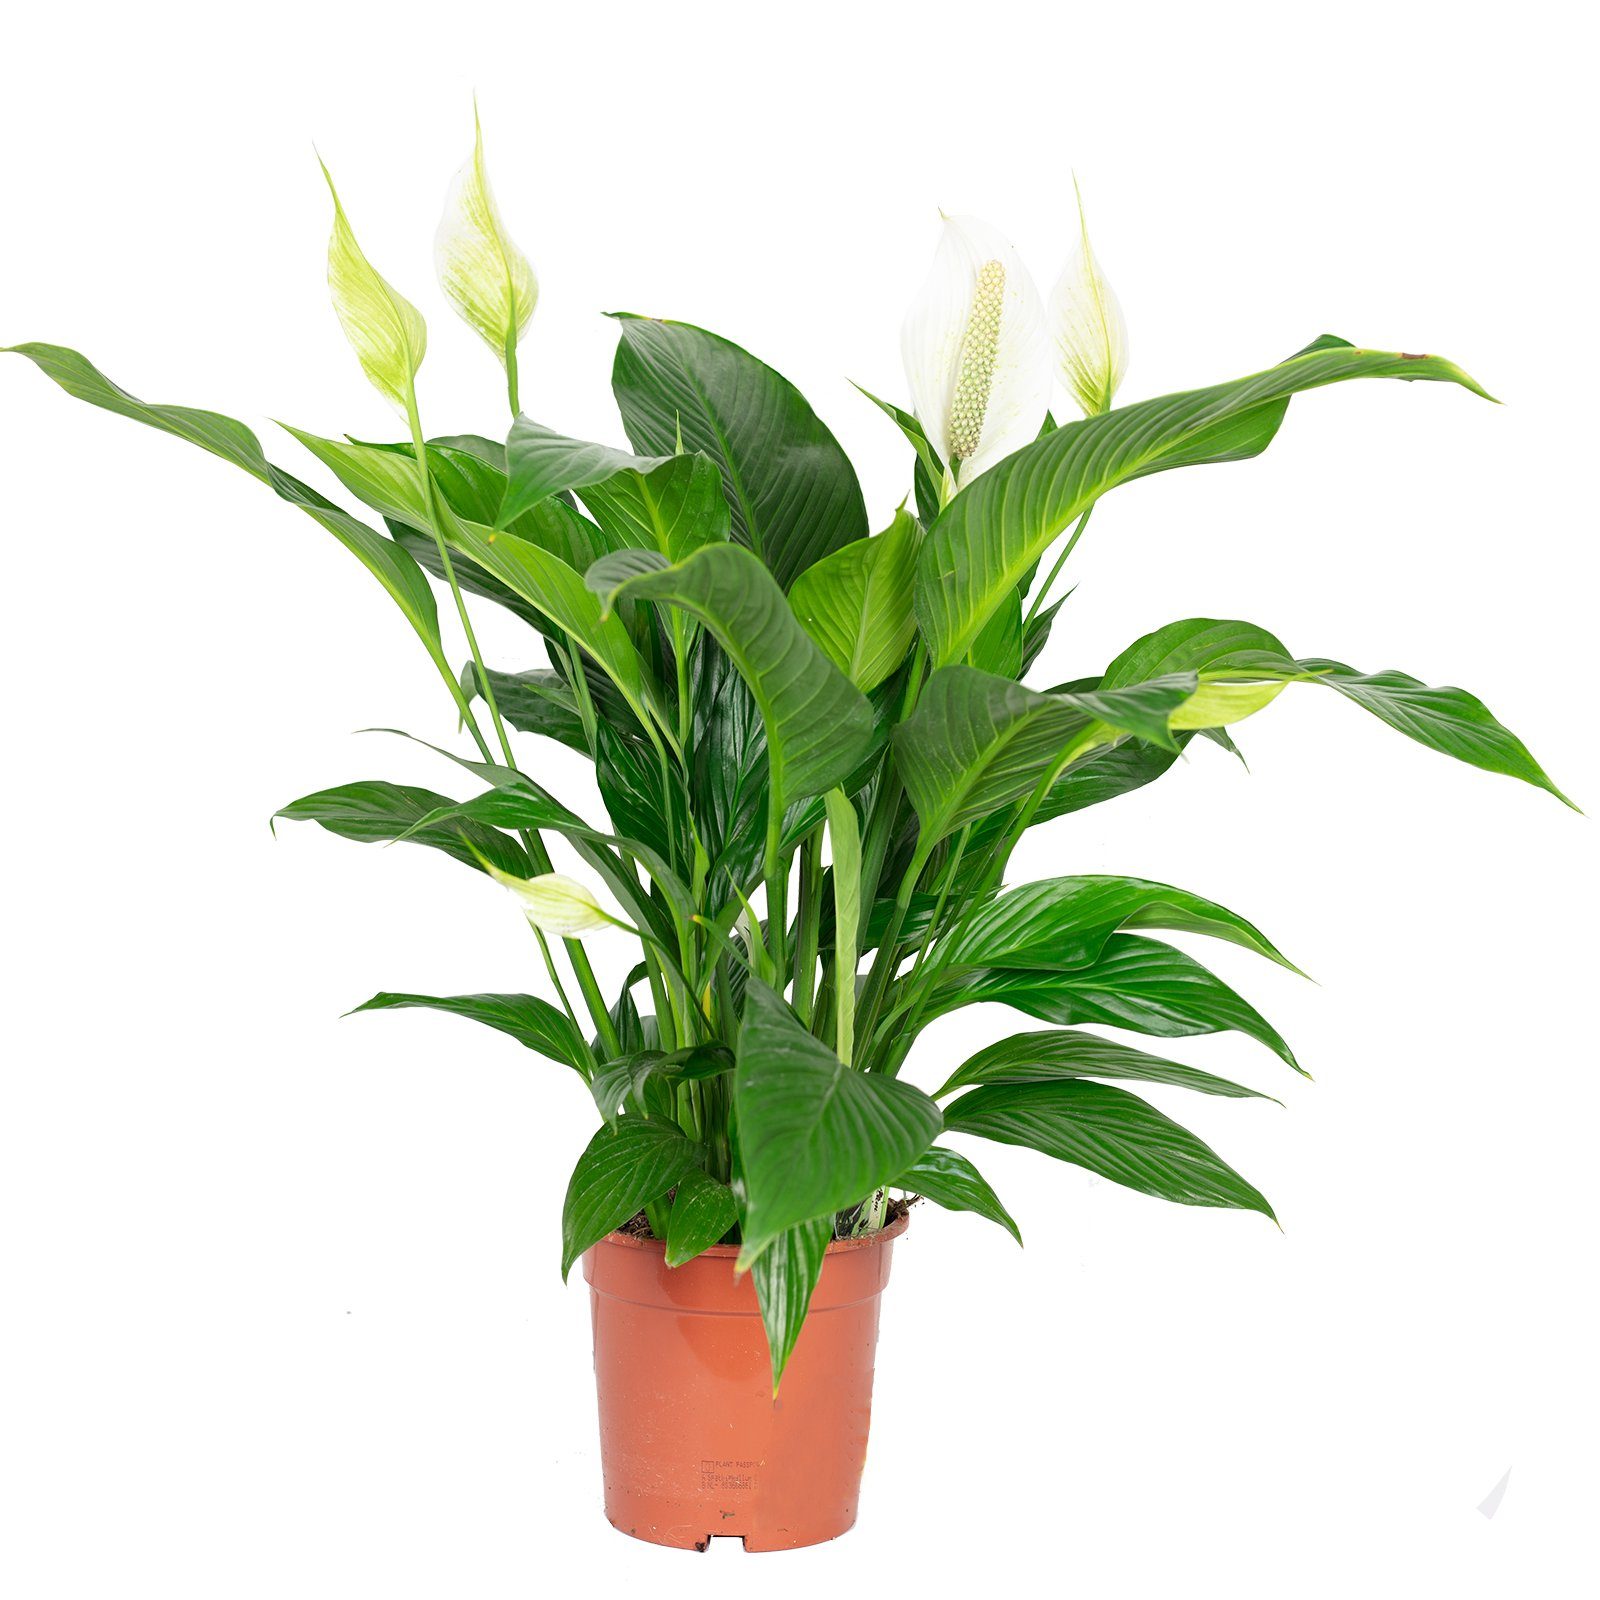 Flowerbox Blumentopf »bepflanzt mit Zimmerpflanze Einblatt - Spathiphyllum  Lauretta - Höhe ca. 70cm, Topf-Ø 19 cm« online kaufen | OTTO